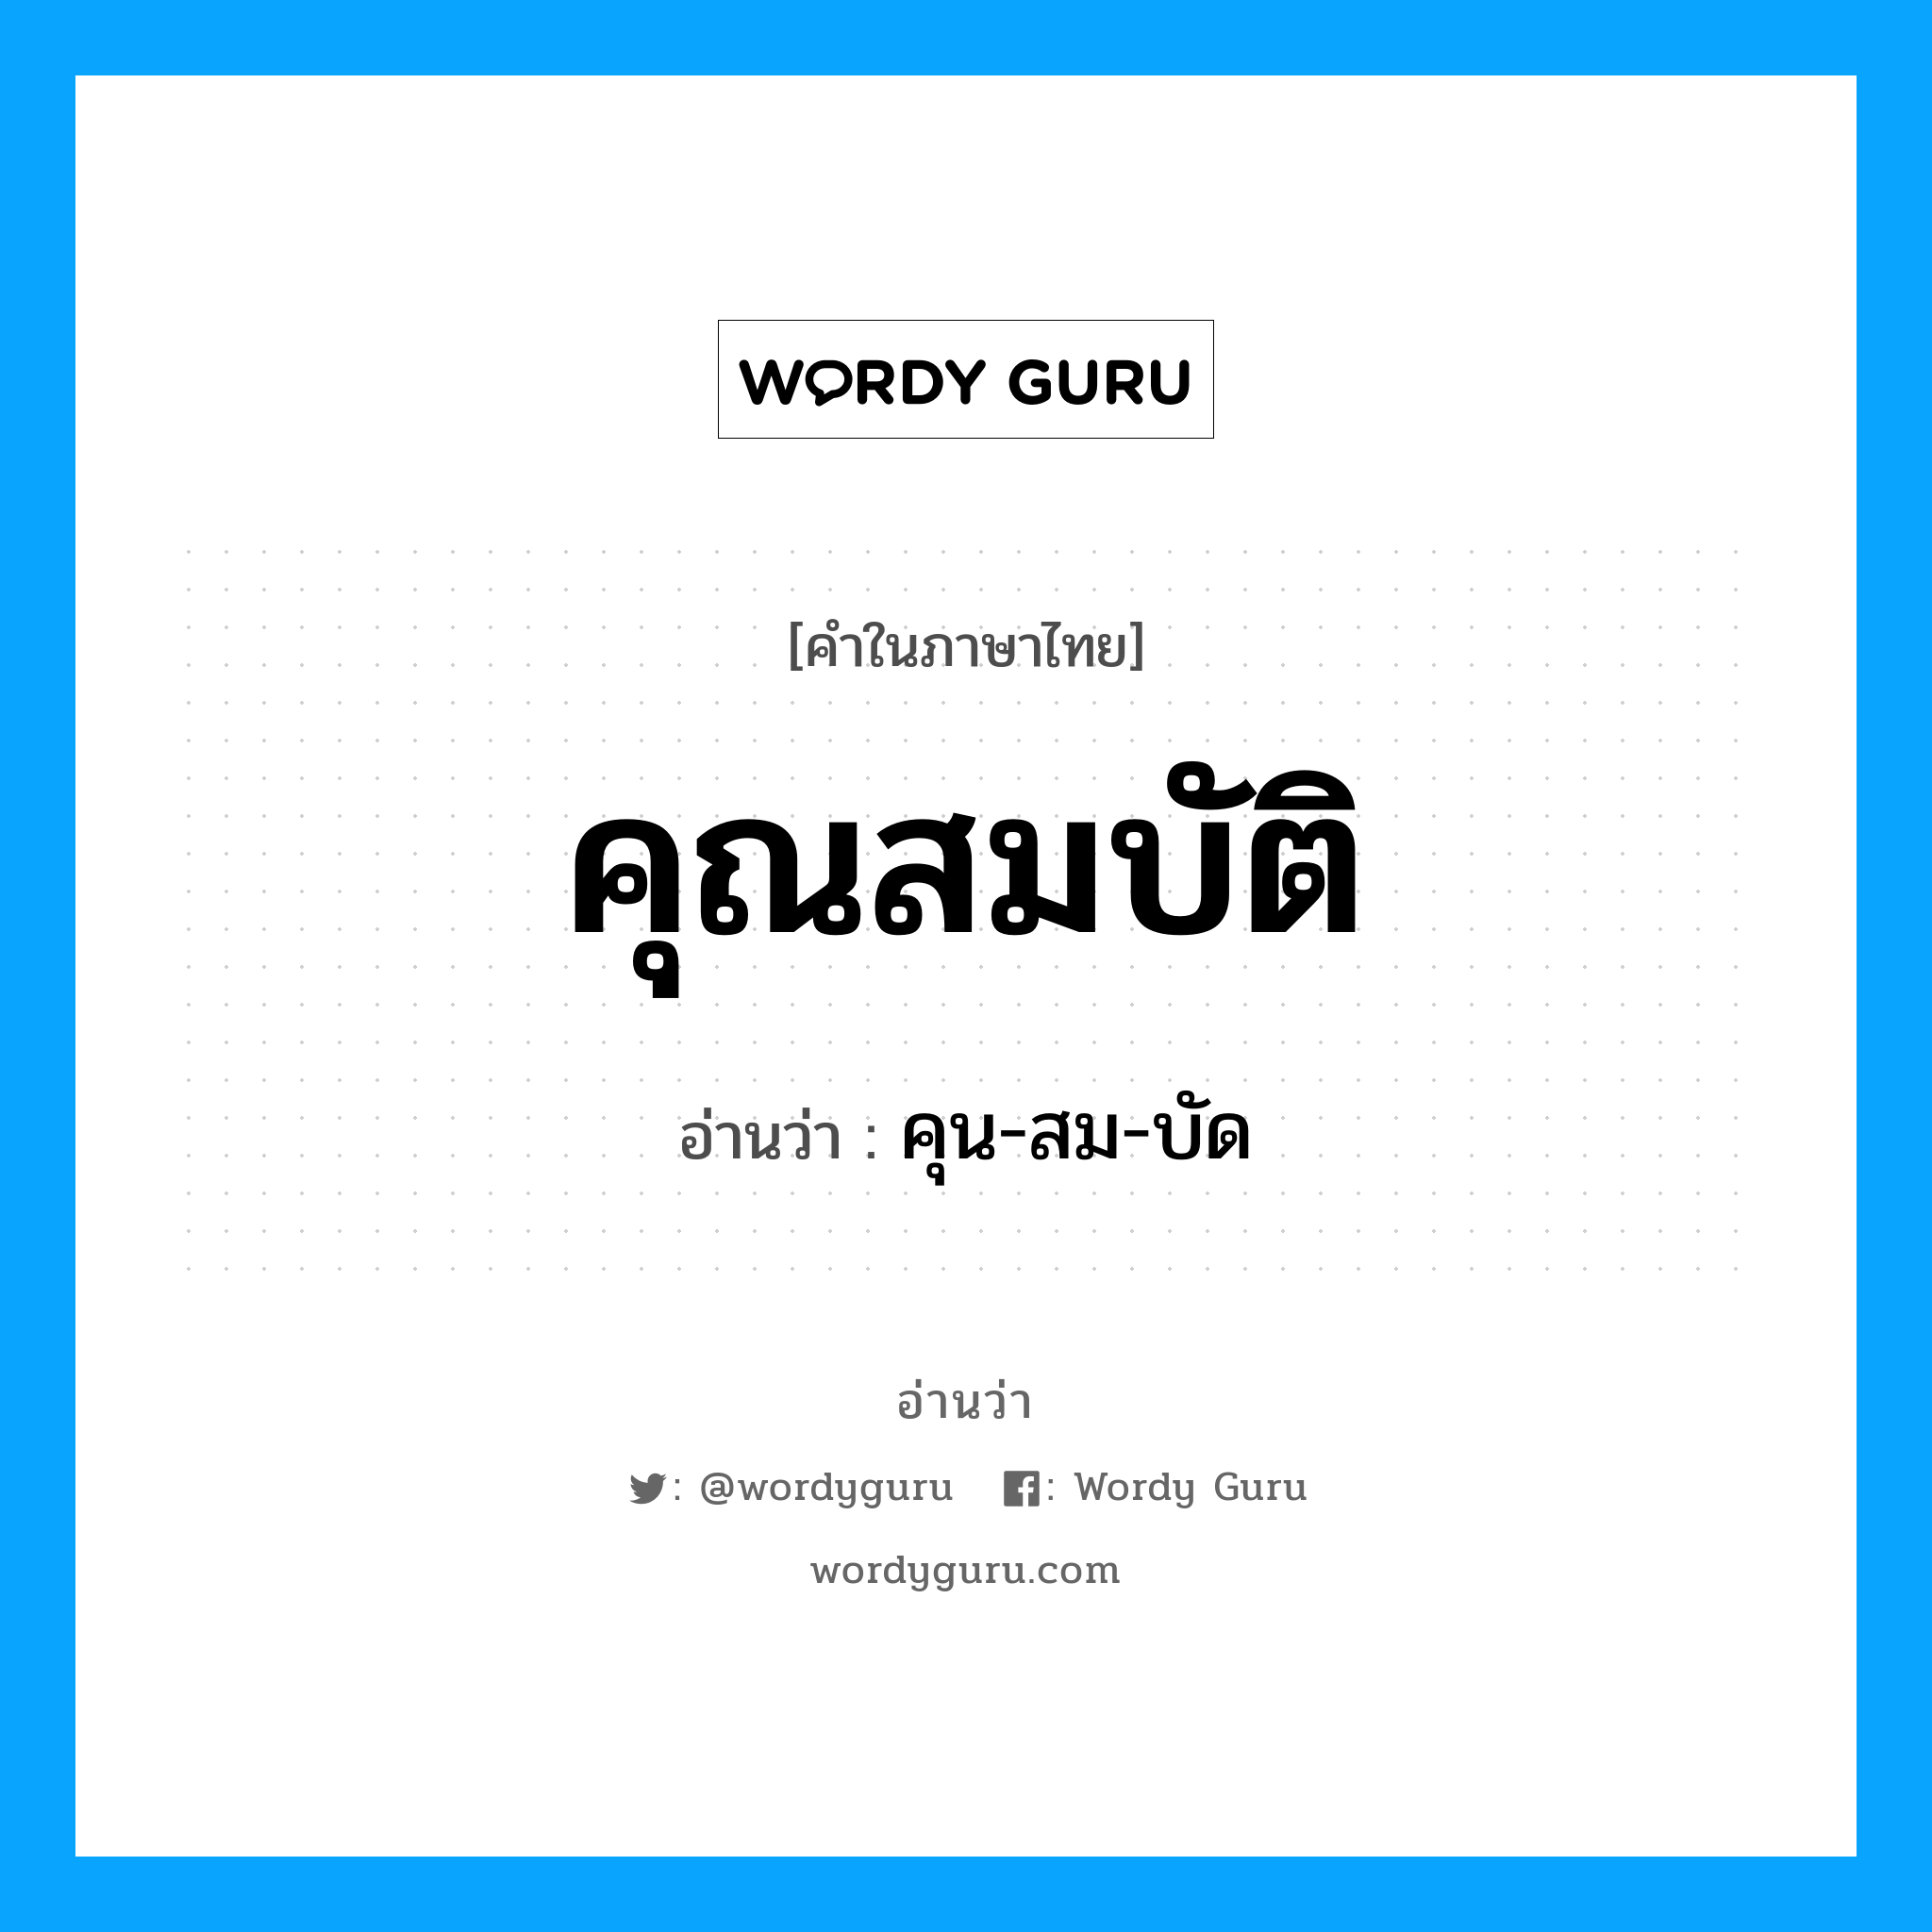 คุน-สม-บัด เป็นคำอ่านของคำไหน?, คำในภาษาไทย คุน-สม-บัด อ่านว่า คุณสมบัติ